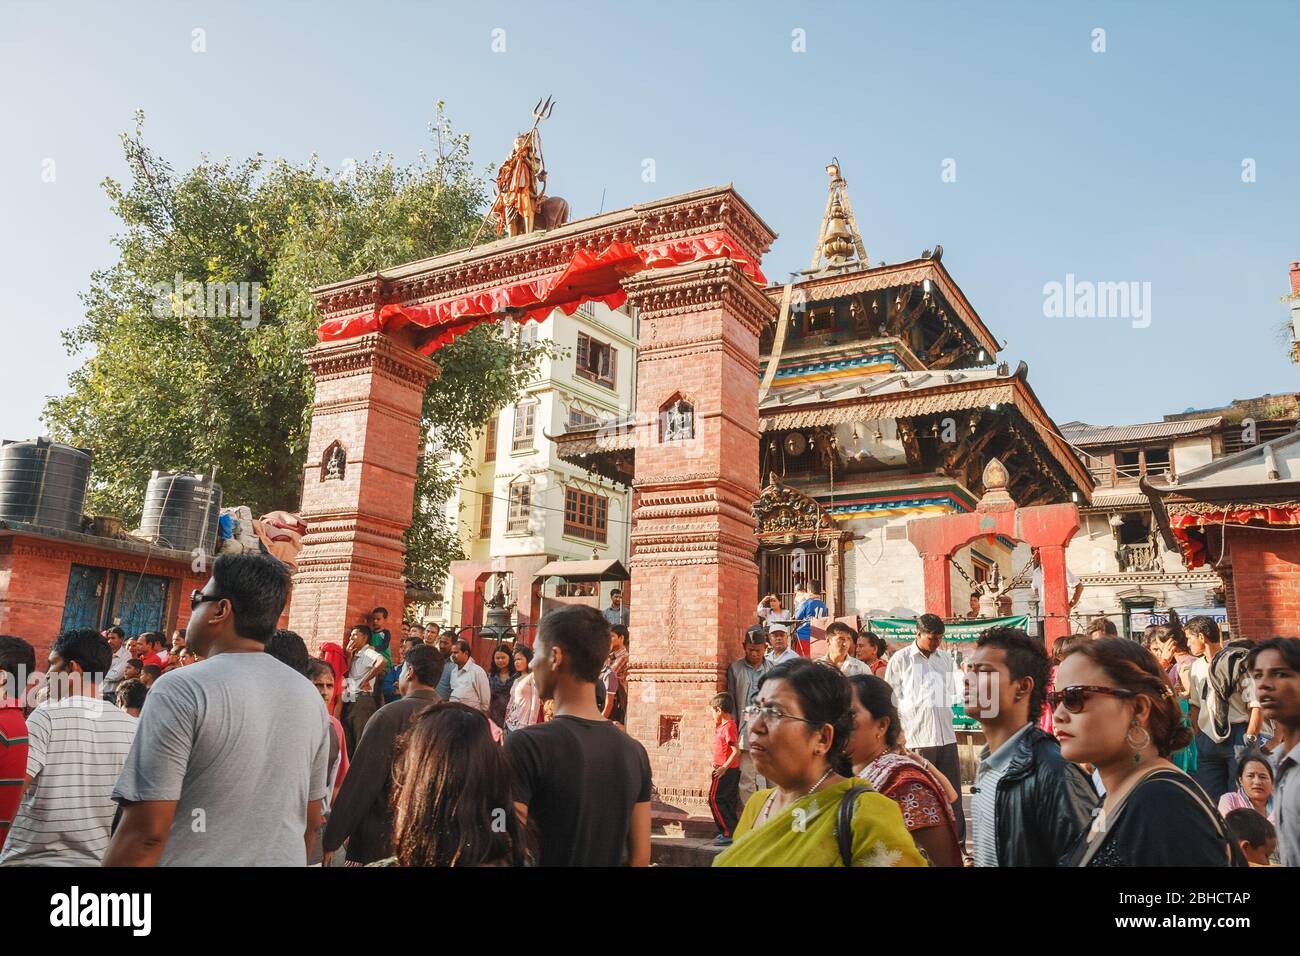 KATHMANDU, NEPAL - 29. SEPTEMBER 2012: Die Menge der Einheimischen auf dem Durbar Square wartet auf den Beginn der Feier des Indra Jatra Festivals in Kath Stockfoto